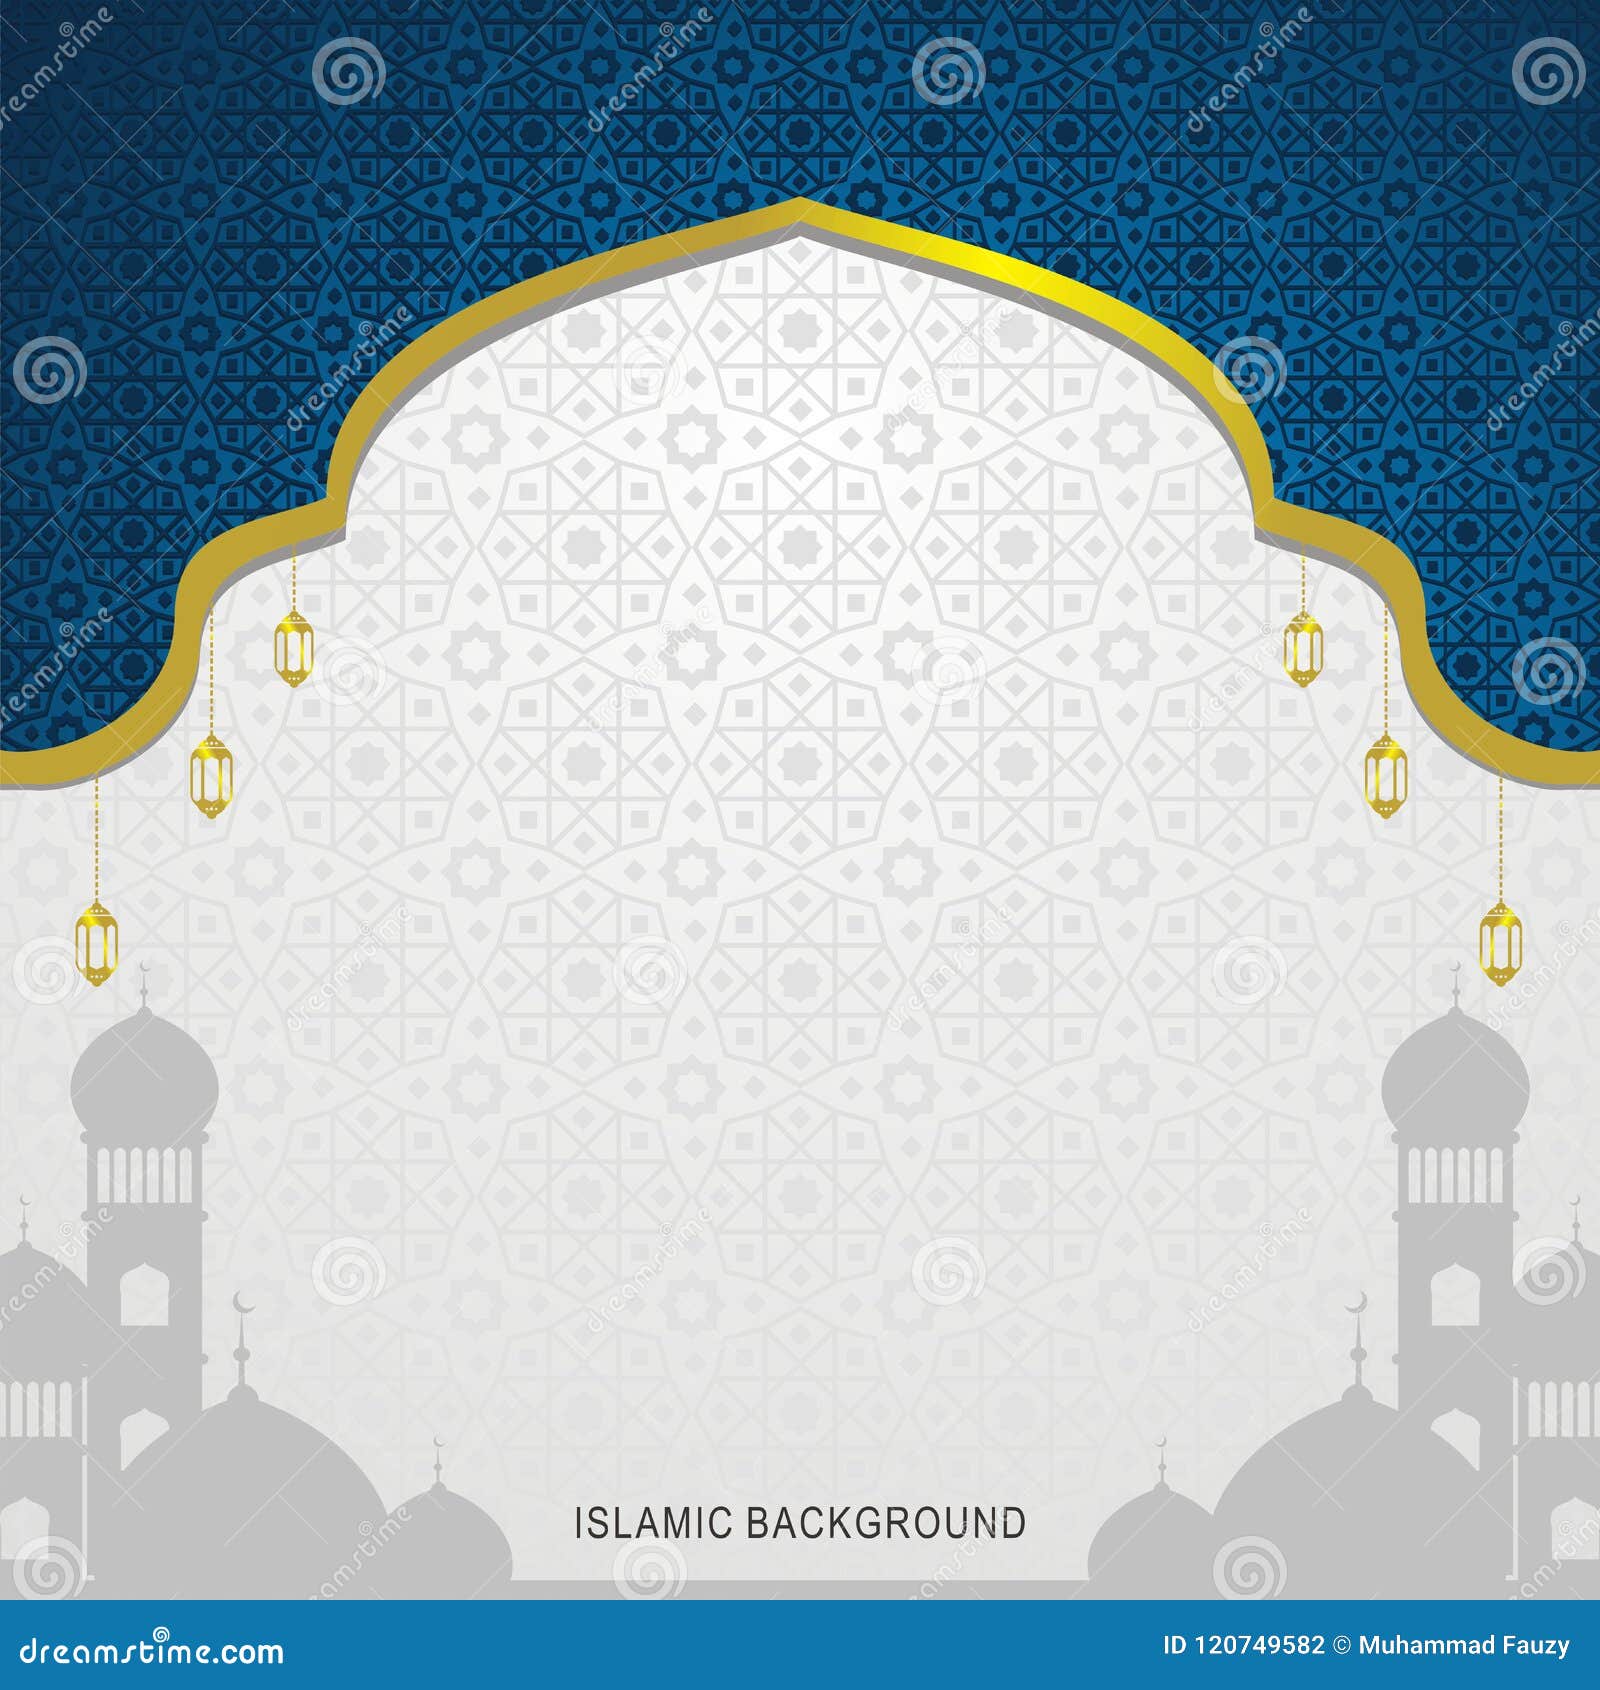 Download 540 Koleksi Background Islami Jpg Paling Keren